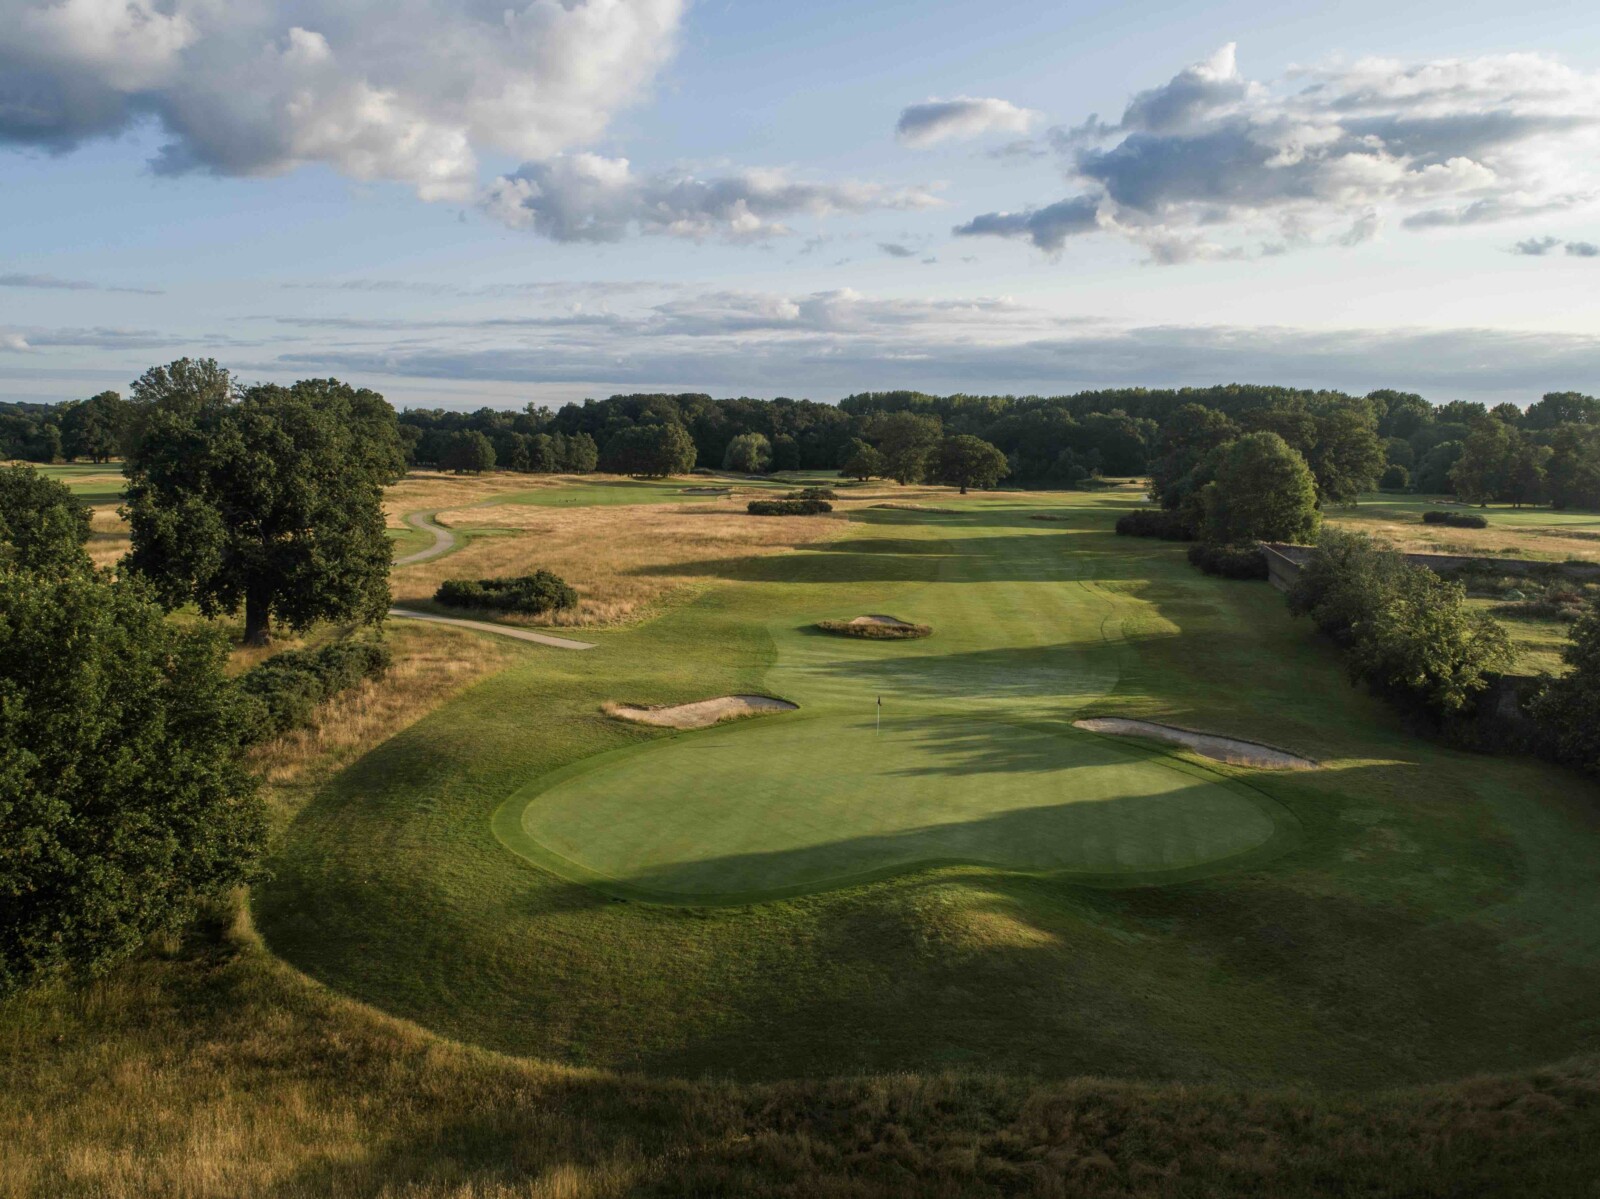 DJI 0598 Buckinghamshire presenta una elegante renovación de su casa club por valor de £ 10 millones - Golf News